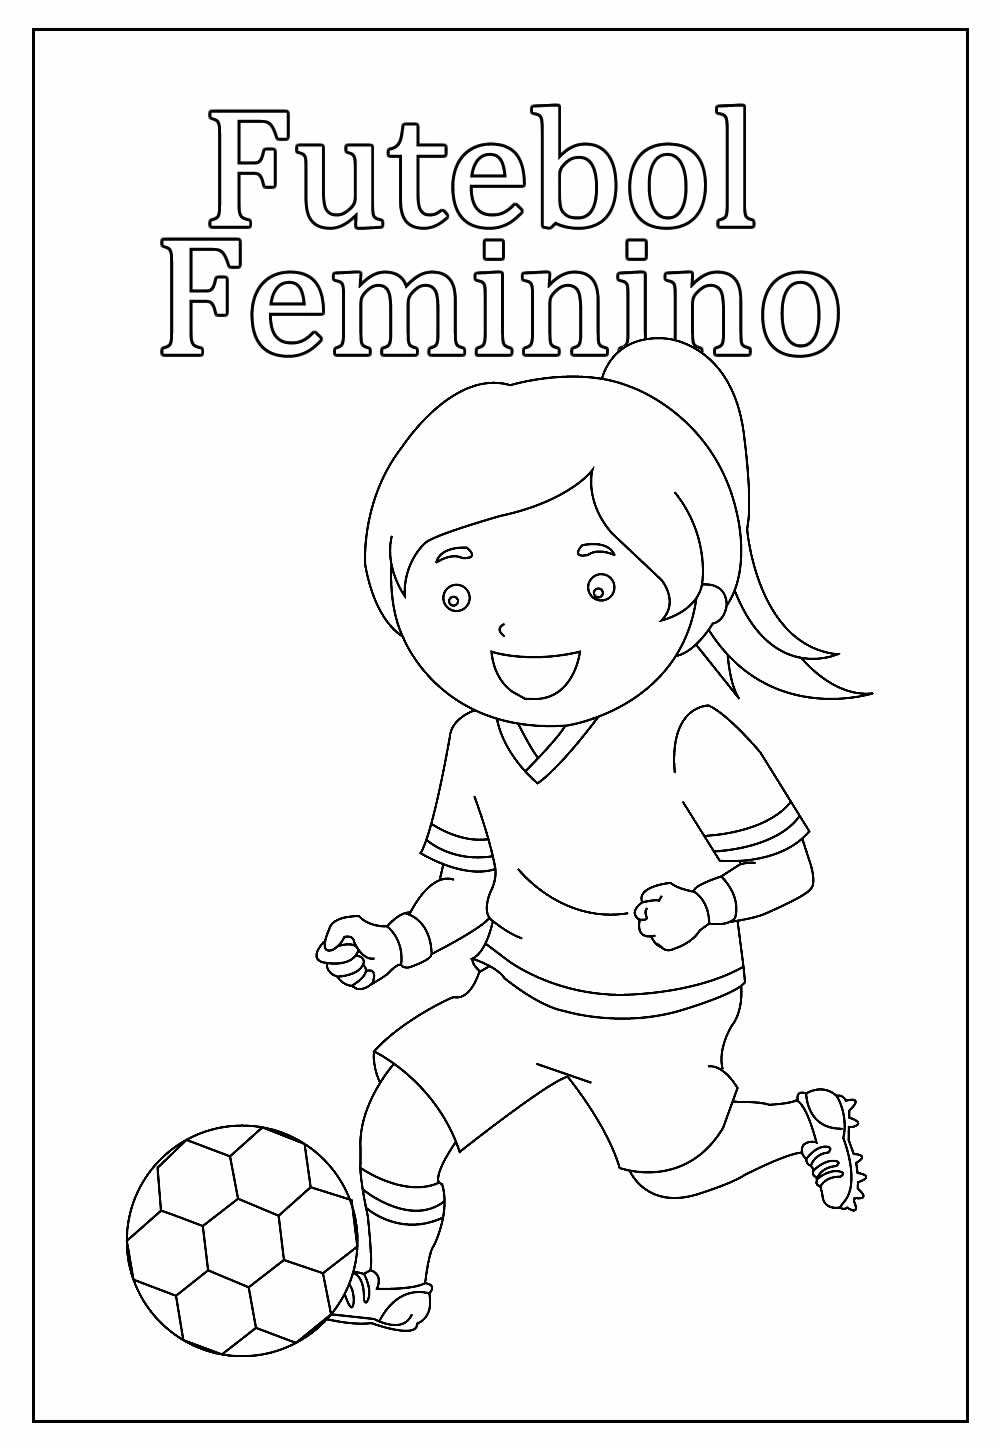 Desenho de Futebol Feminino para colorir